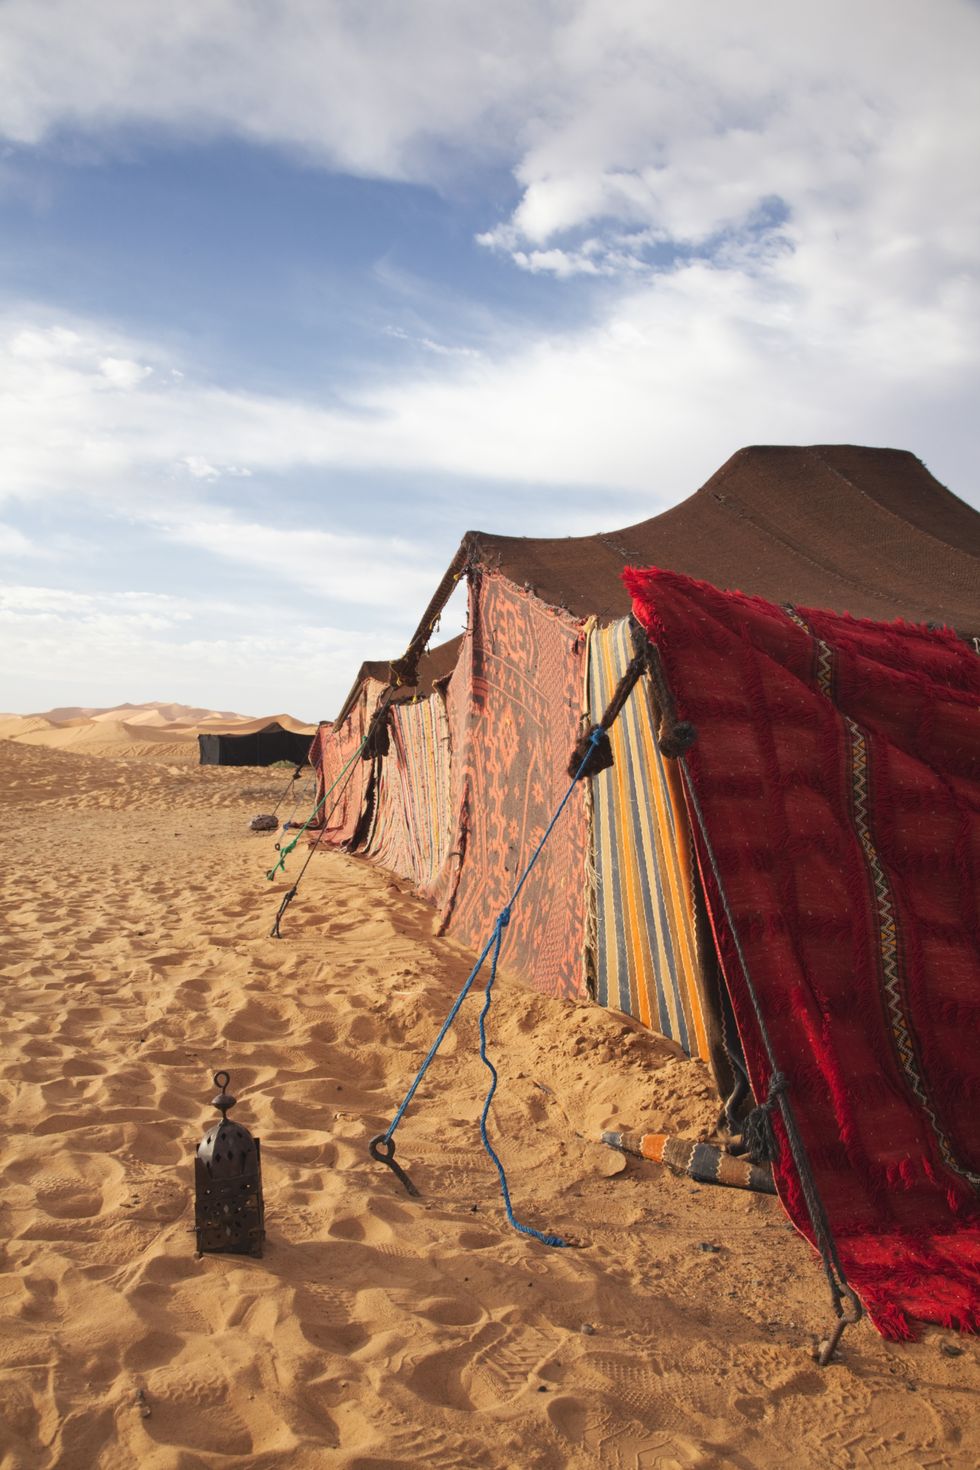 <p>Per gli Scorpione è fondamentale trovare cose che nessun ha ancora scoperto, luoghi ancora tutti da esplorare e tutti gli angoli che una destinazione abbia da offrire. Un suq in Marocco potrebbe offrire ore di esplorazione. E perché non prendere in considerazione l'opportunità di uscire dai sentieri battuti e trascorrere un paio di notti in un tradizionale accampamento berbero nel deserto del Sahara?</p>